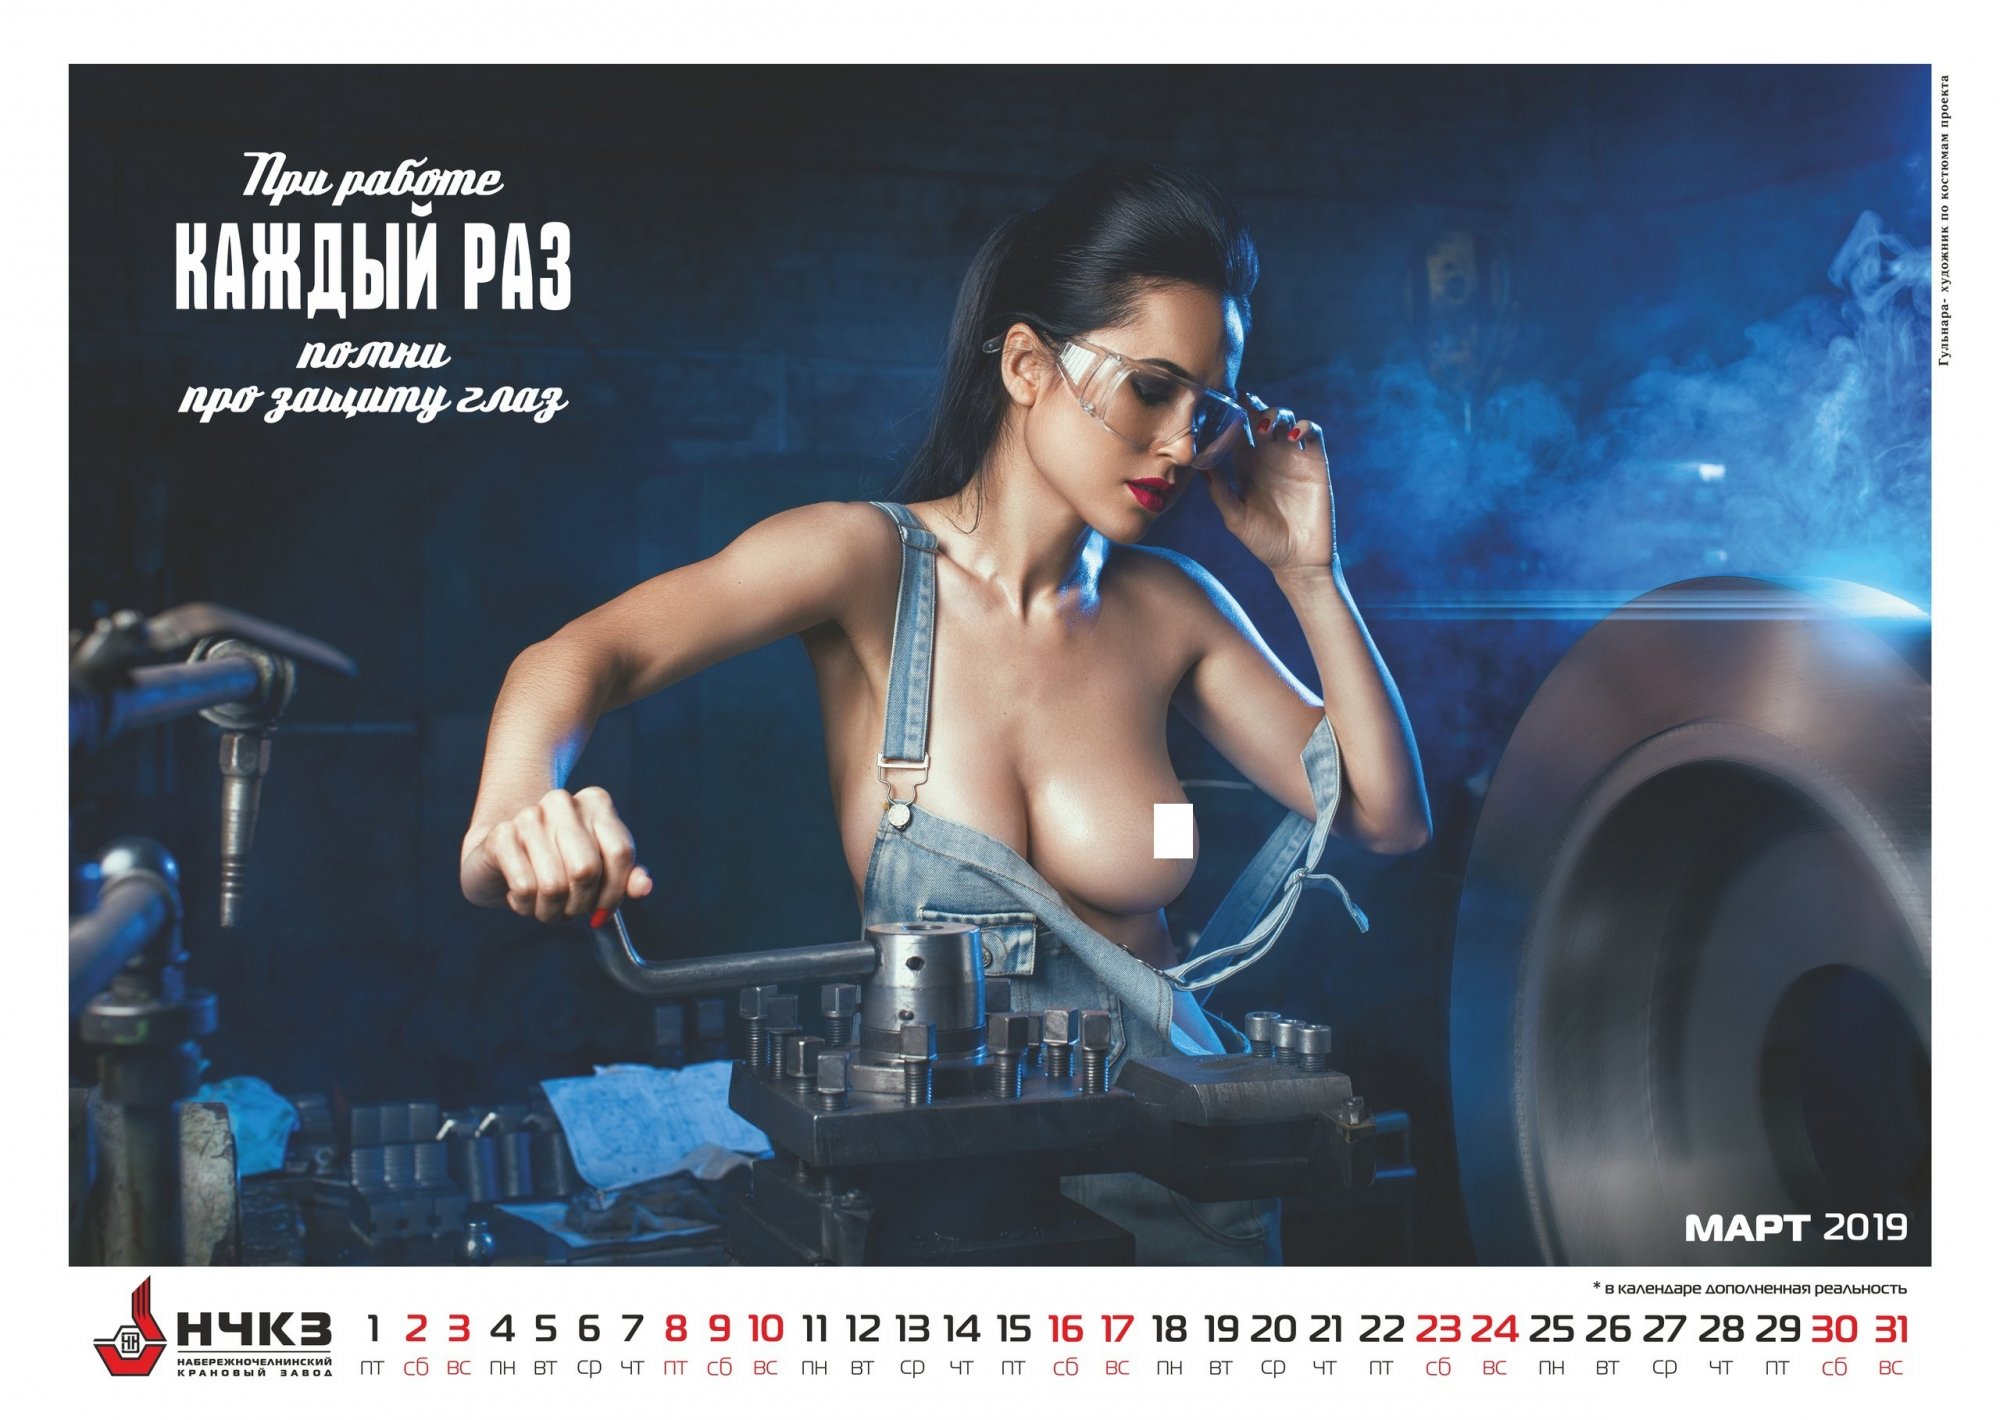 Опубликованы первые фото эротического календаря кранового завода